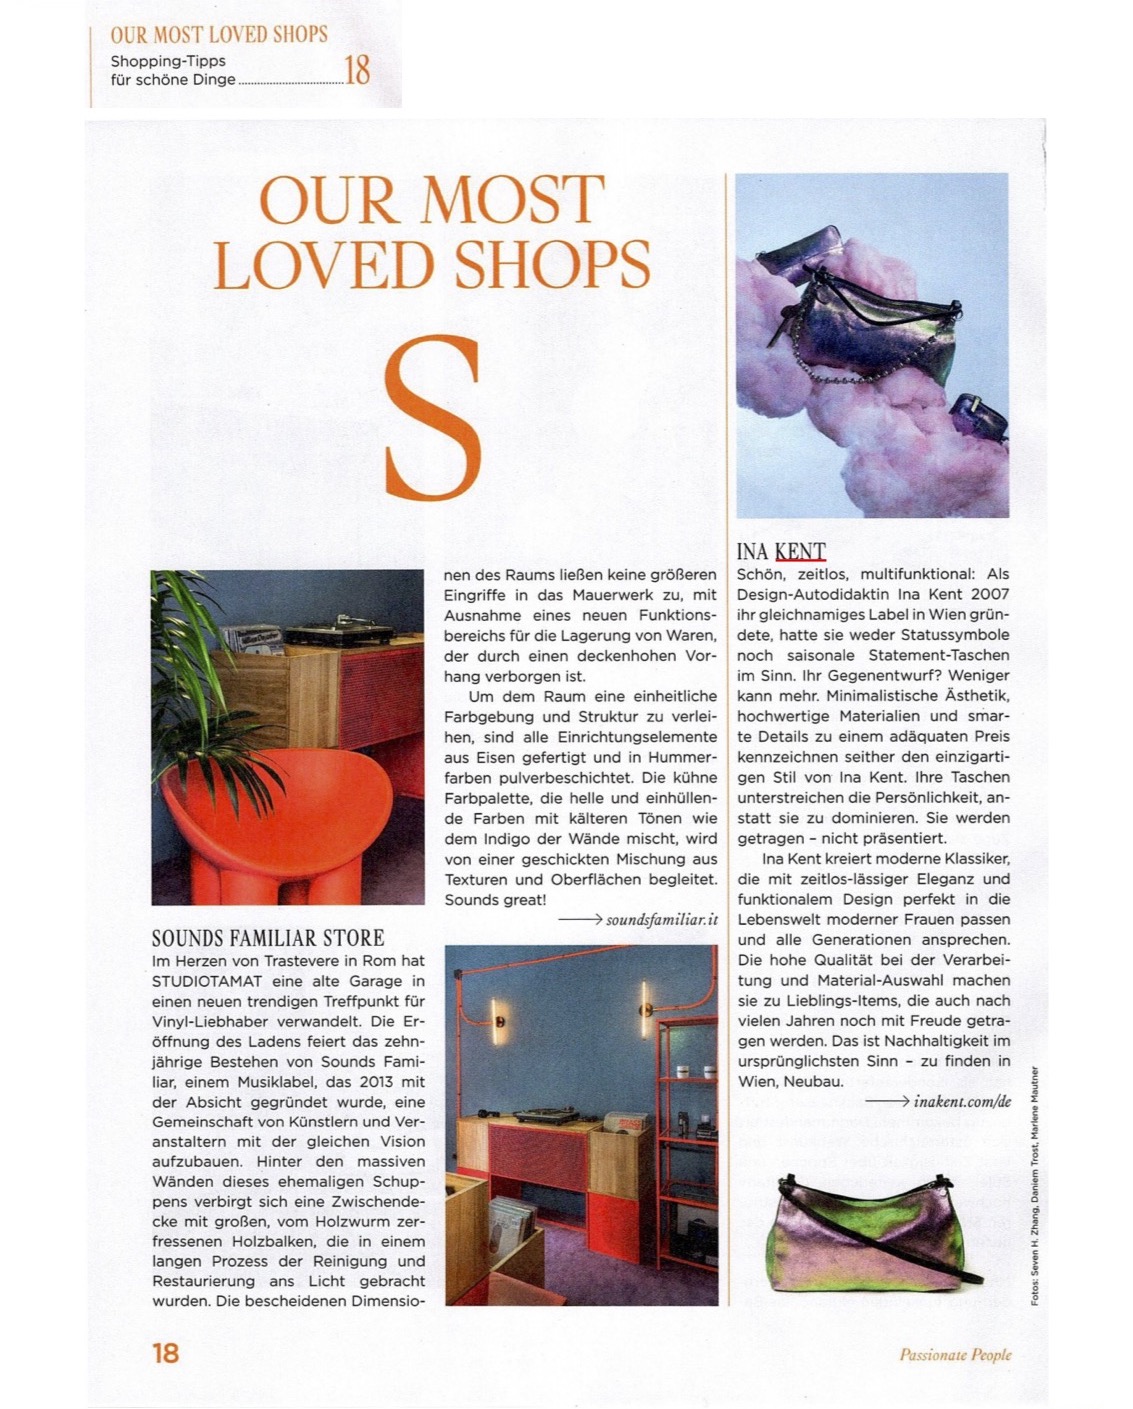 Artikel-Ausschnitt aus der Beilage IDA der Kleinen Zeitung mit dem Titel "Our Most Loved Shops"